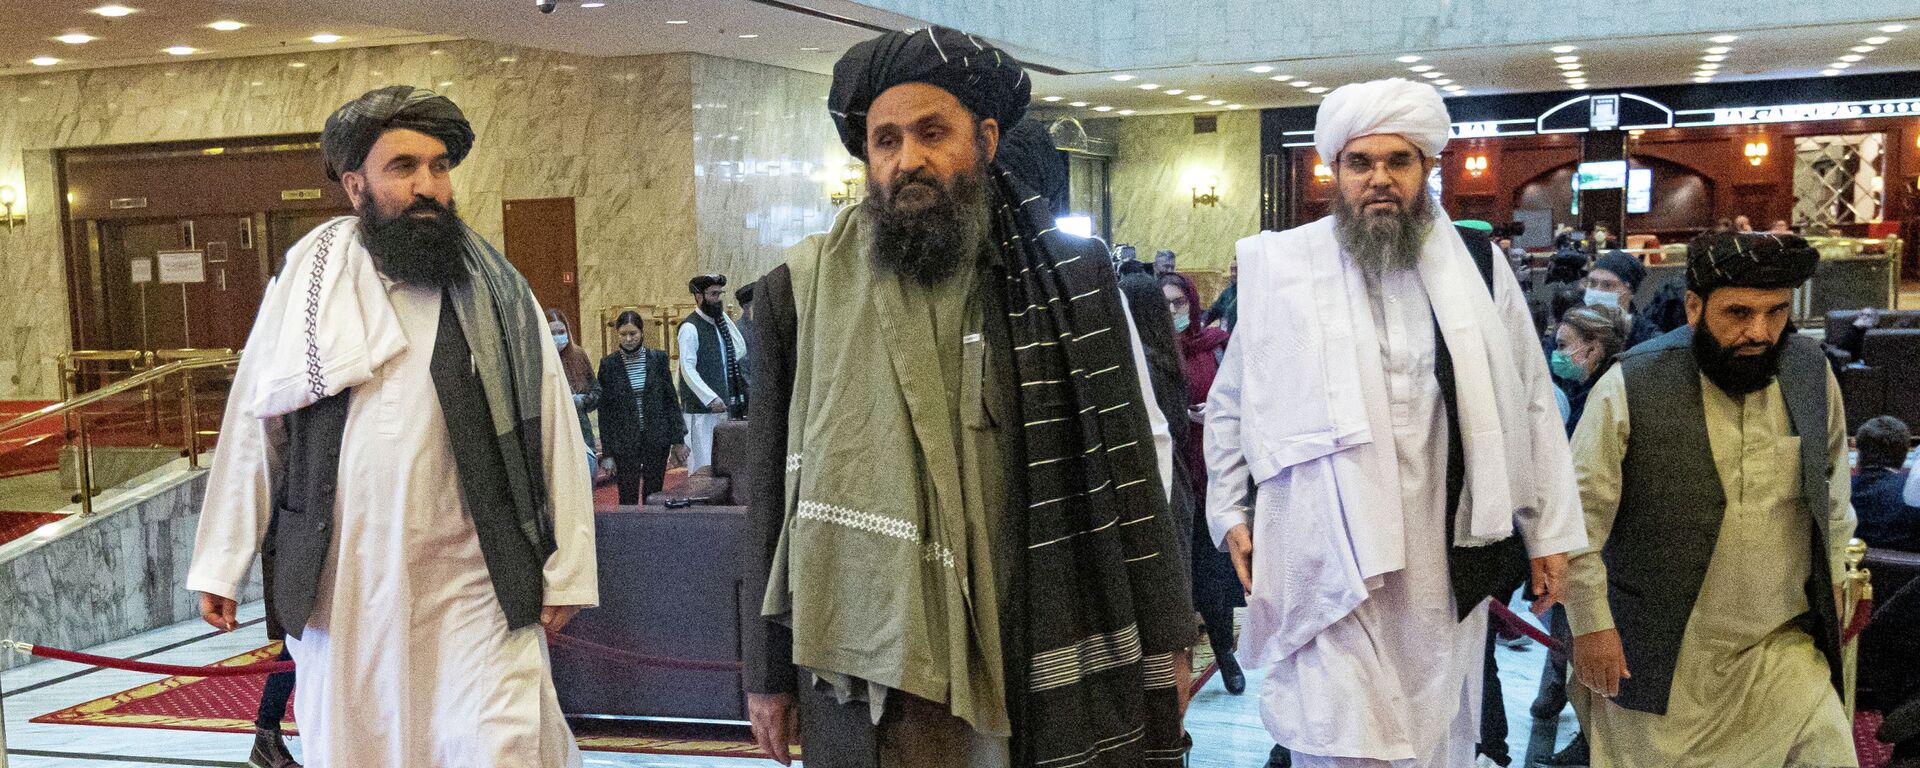 Делегация талибов на афганской мирной конференции в Москве. 18 марта 2021 года - Sputnik Кыргызстан, 1920, 17.08.2021